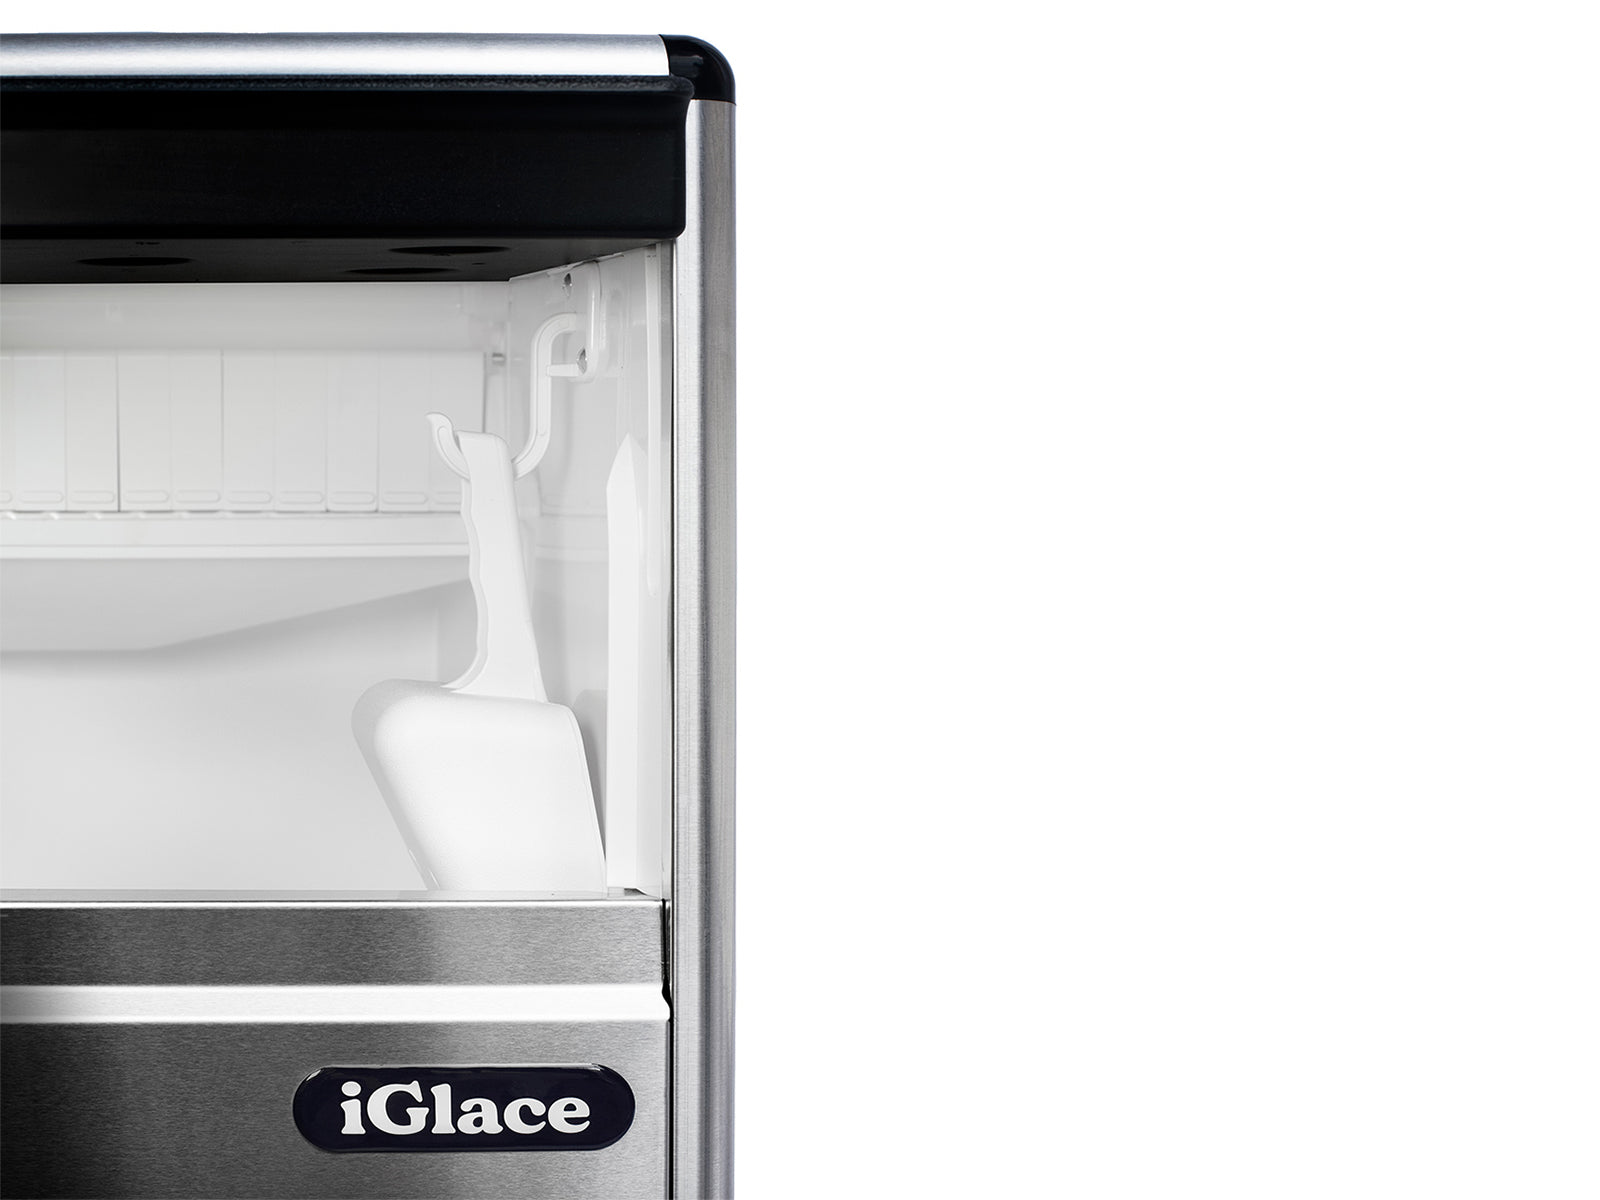 Maquina de hielo Plata 35Kg iGlace